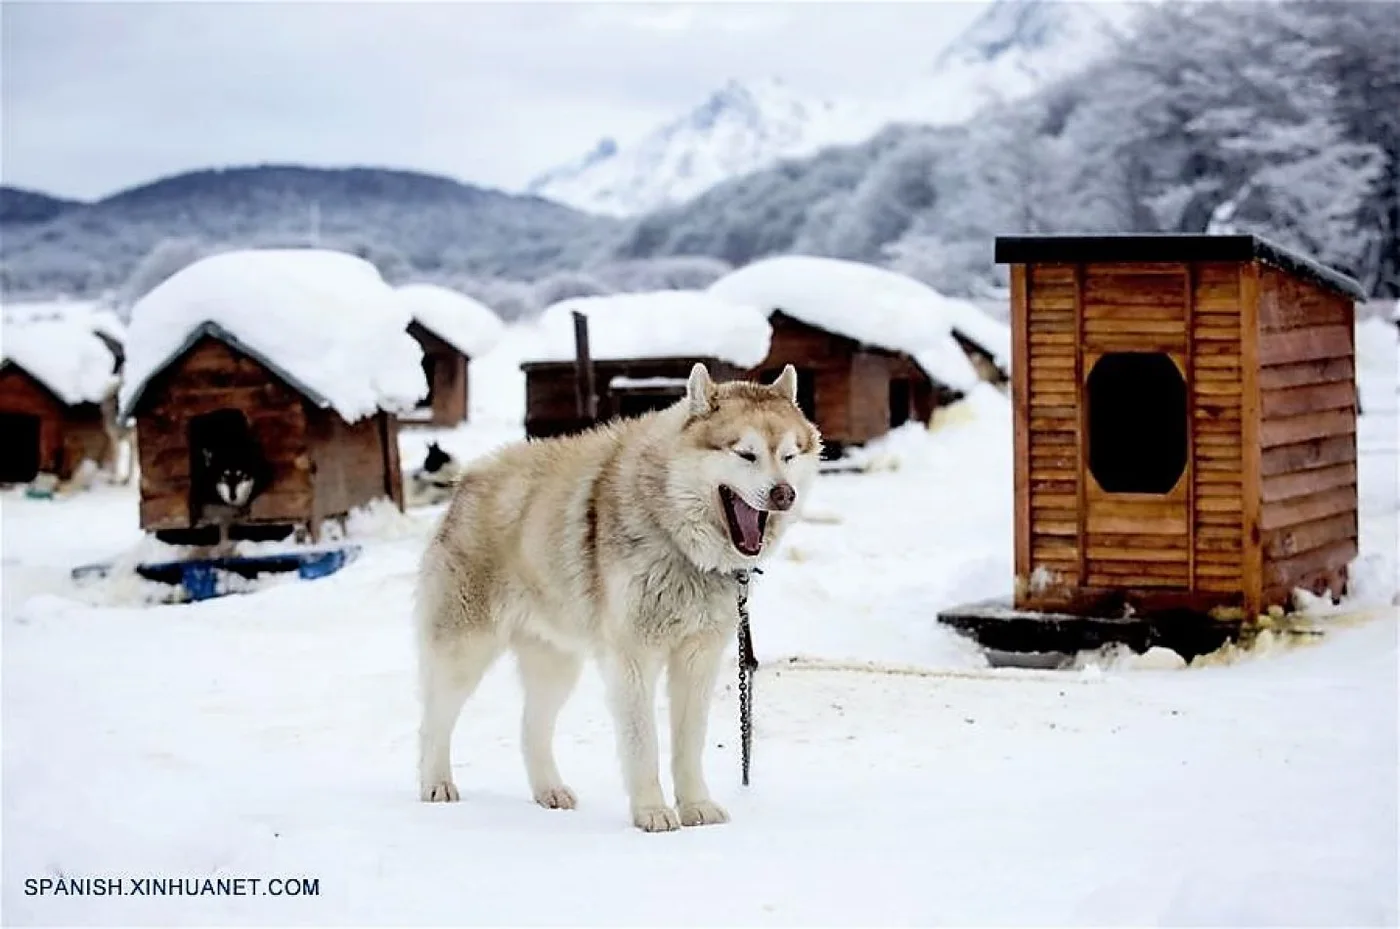 Un husky siberiano caminando en el criadero "Siberianos de Fuego", en cercanías a la ciudad de Ushuaia.